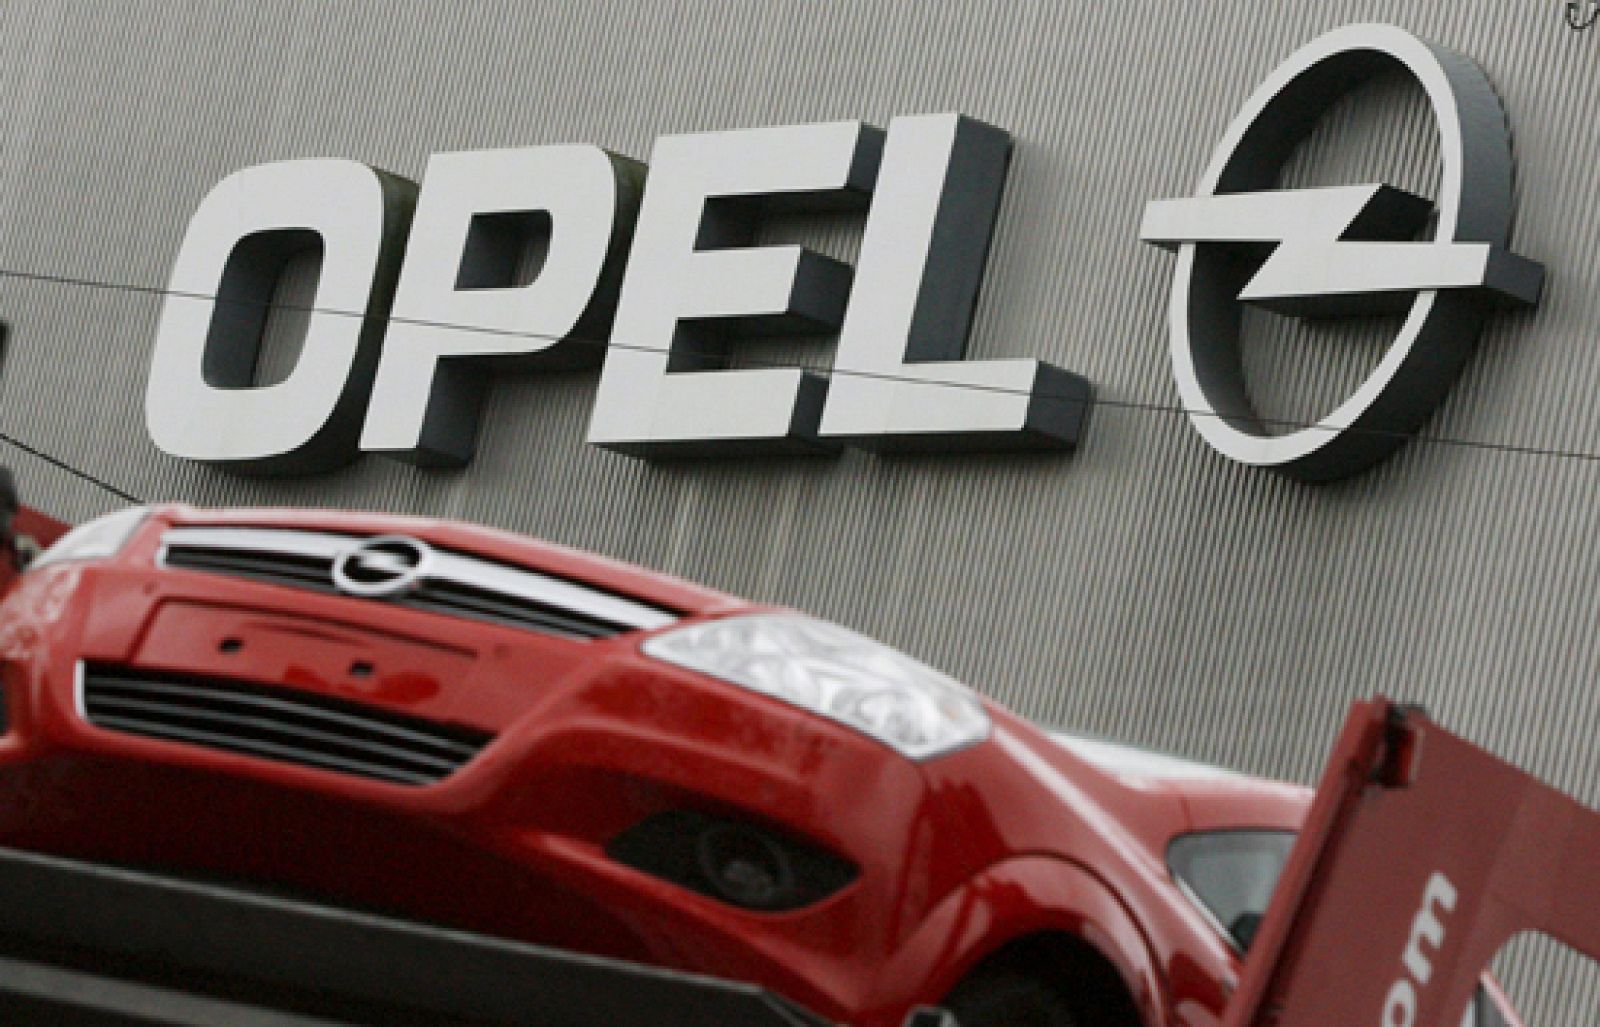 La decisión del Consejo de Administración de General Motors de no vender finalmente Opel al consorcio austriaco canadiense Magna ha causado sorpresa en todo el mundo.